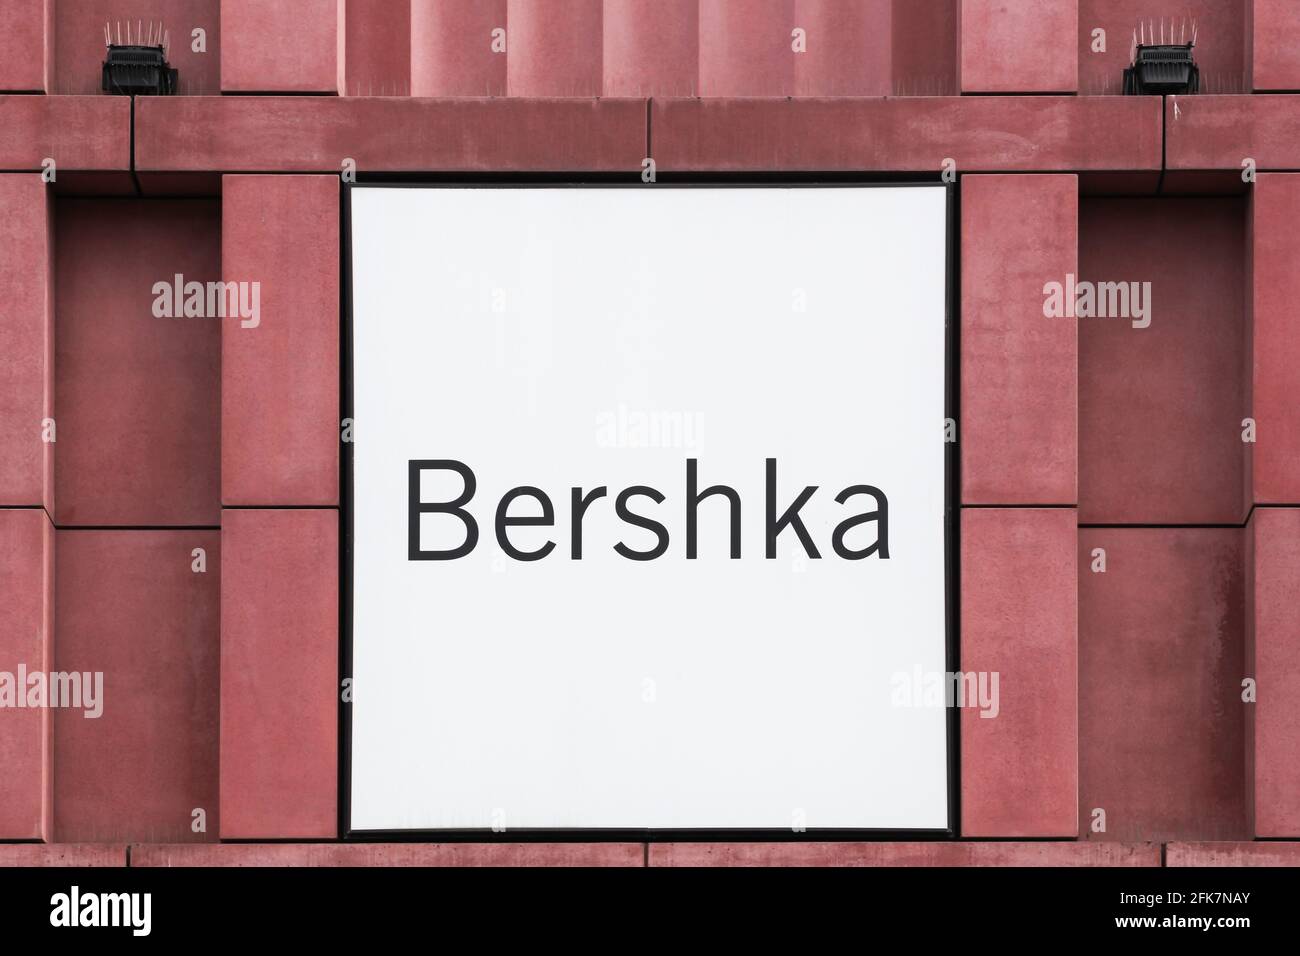 Berlin, Allemagne - 12 juillet 2020 : logo Bershka sur un mur. Bershka est une entreprise de vente de vêtements. Il fait partie du groupe espagnol Inditex Banque D'Images